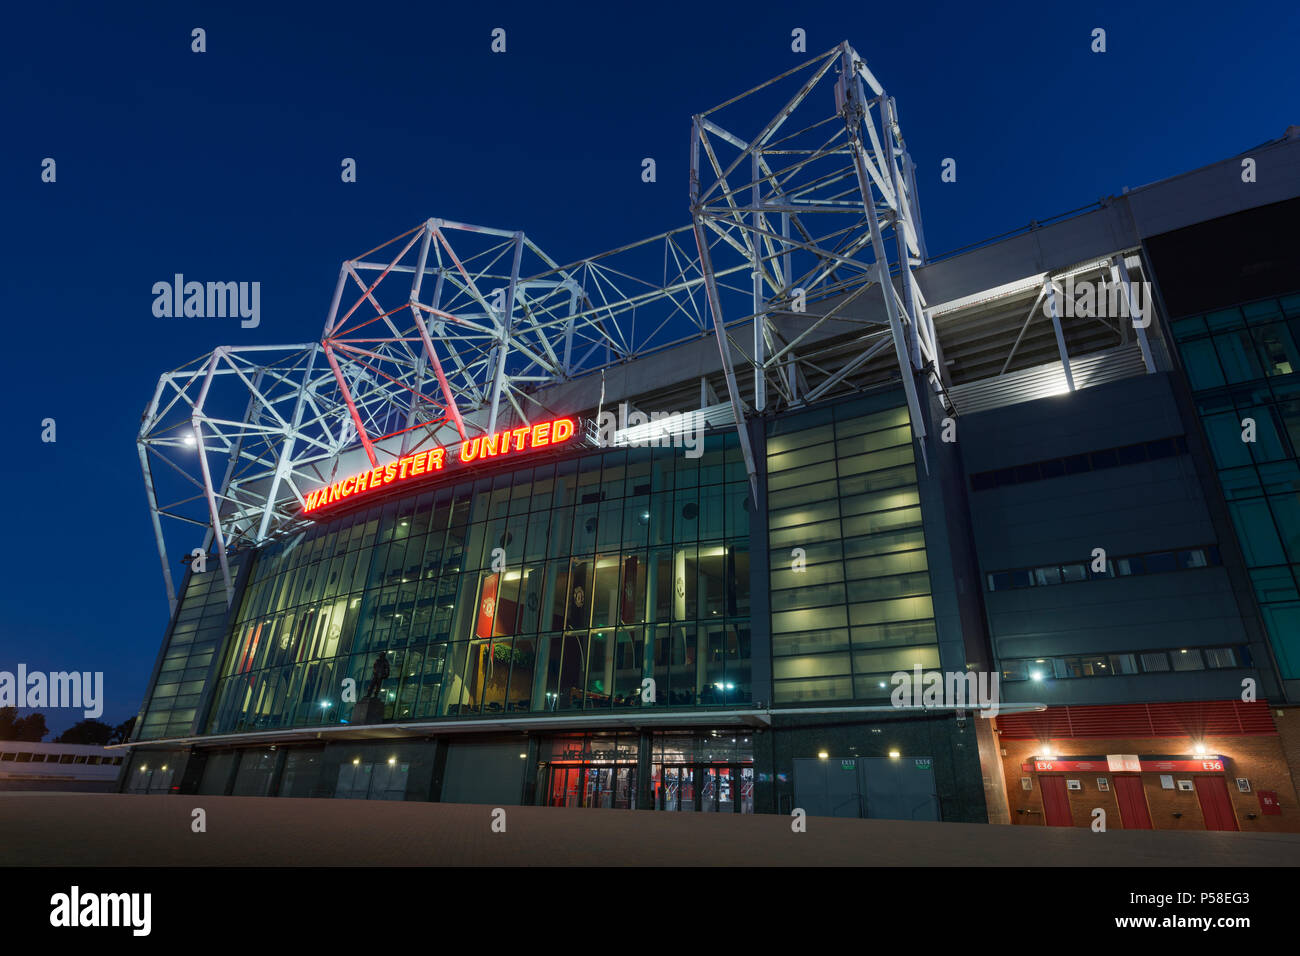 Le stade Old Trafford, domicile du Manchester United Football Club, au cours d'une soirée d'été (usage éditorial uniquement). Banque D'Images